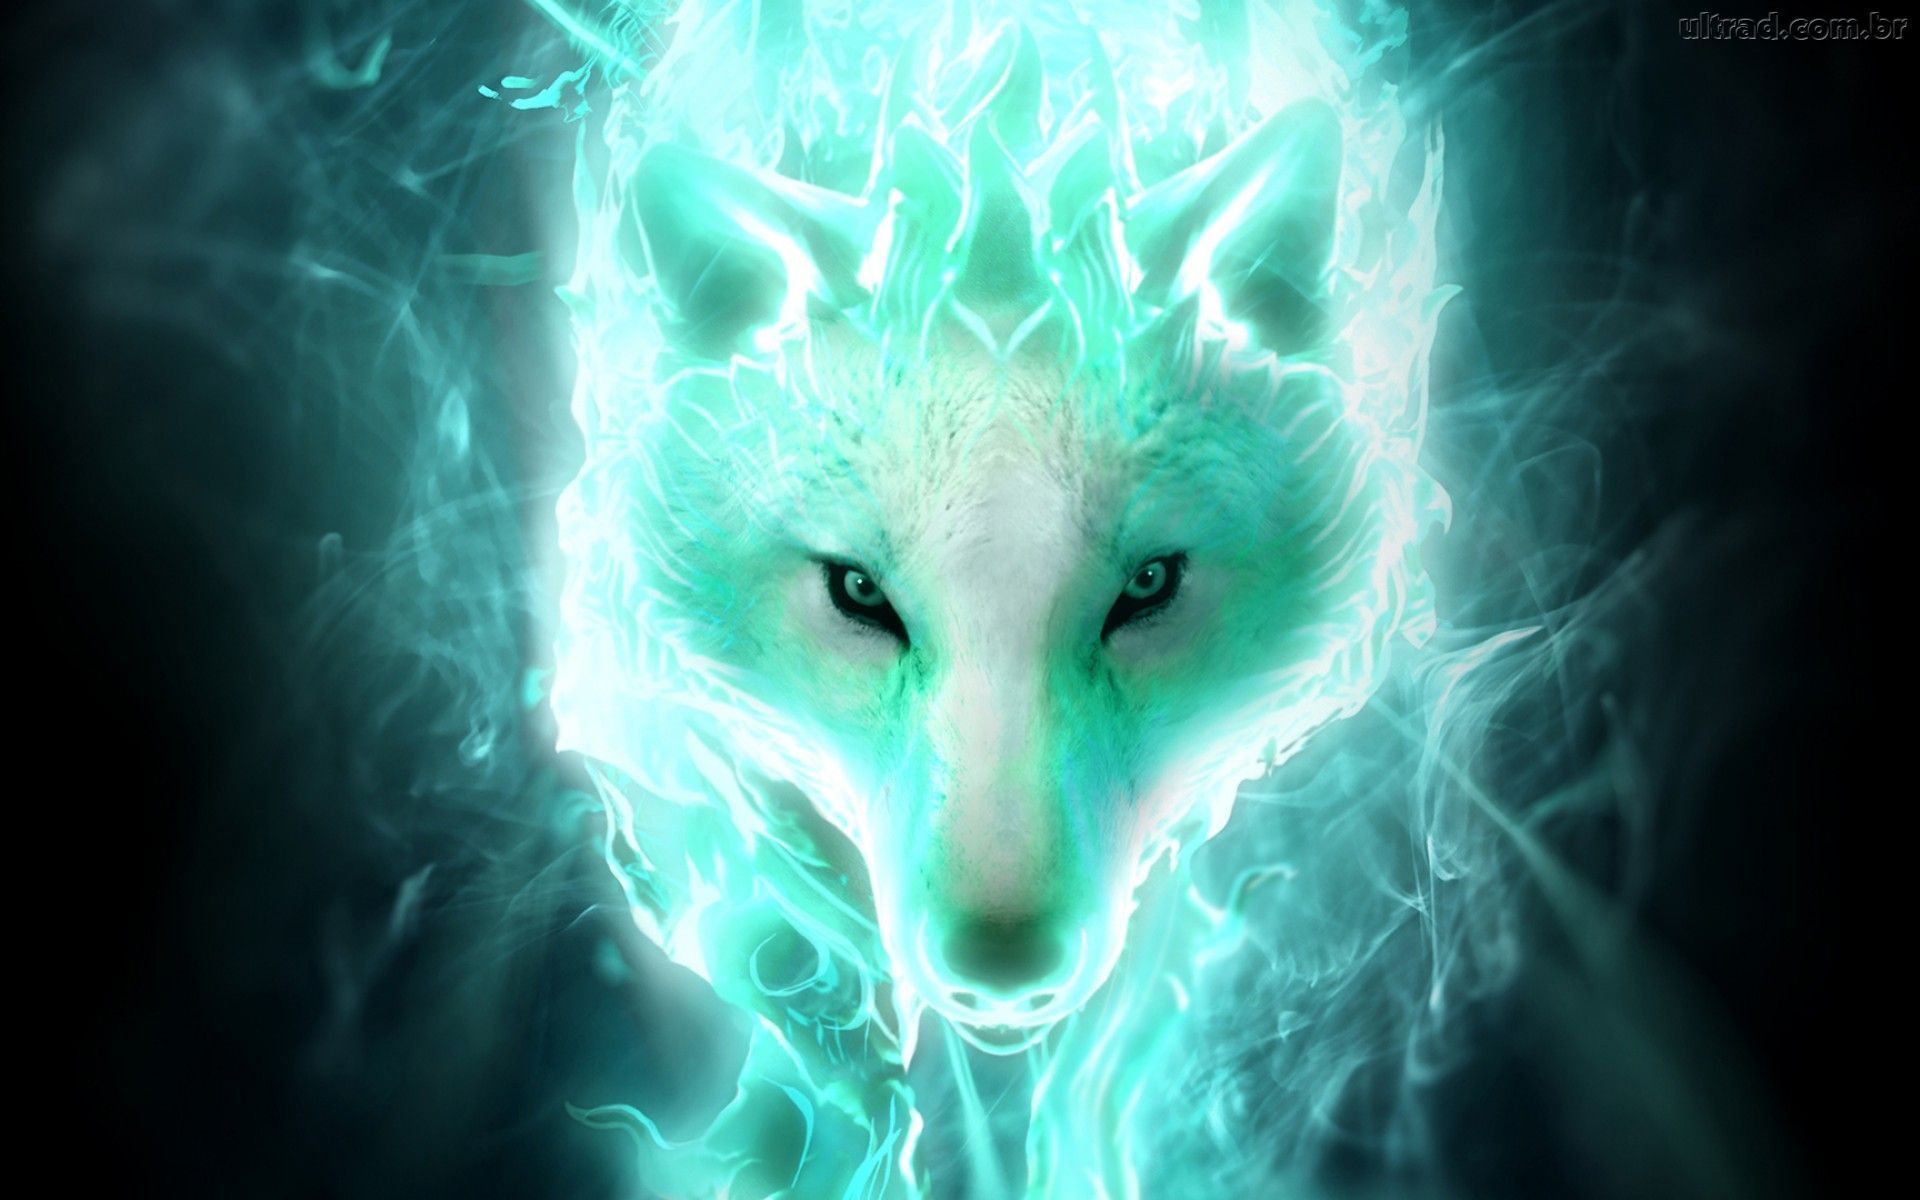 wolf of lightning